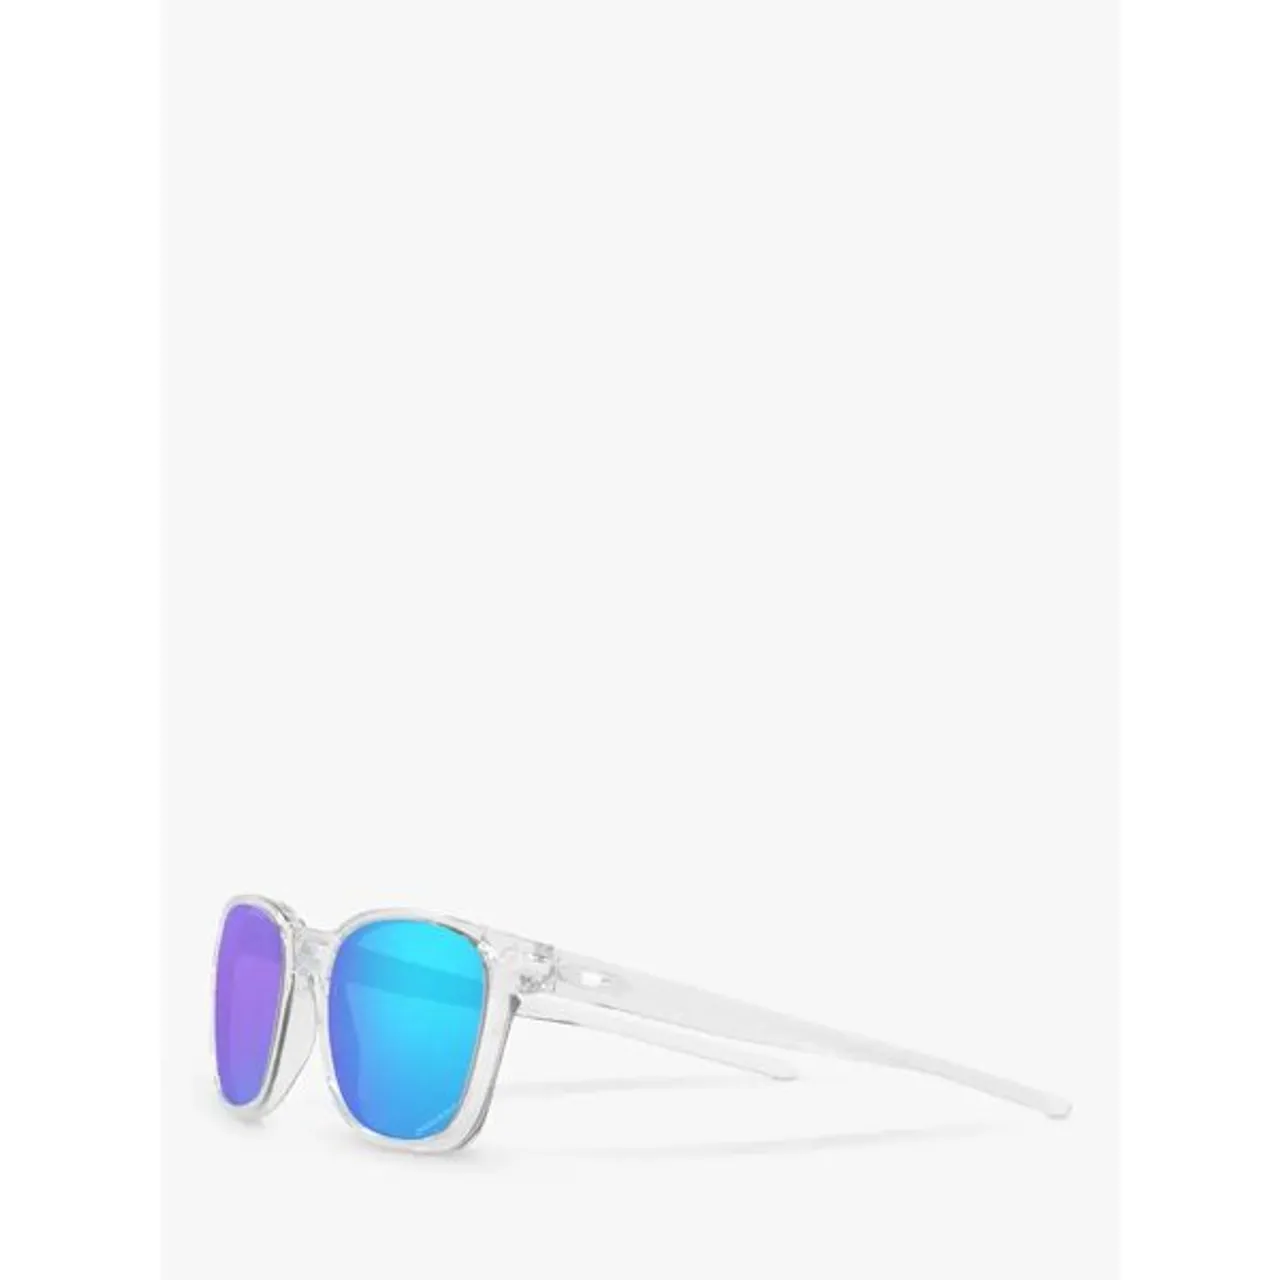 Oakley OO9018 Men's Objector Sunglasses, Clear/Blue - Clear/Blue - Male